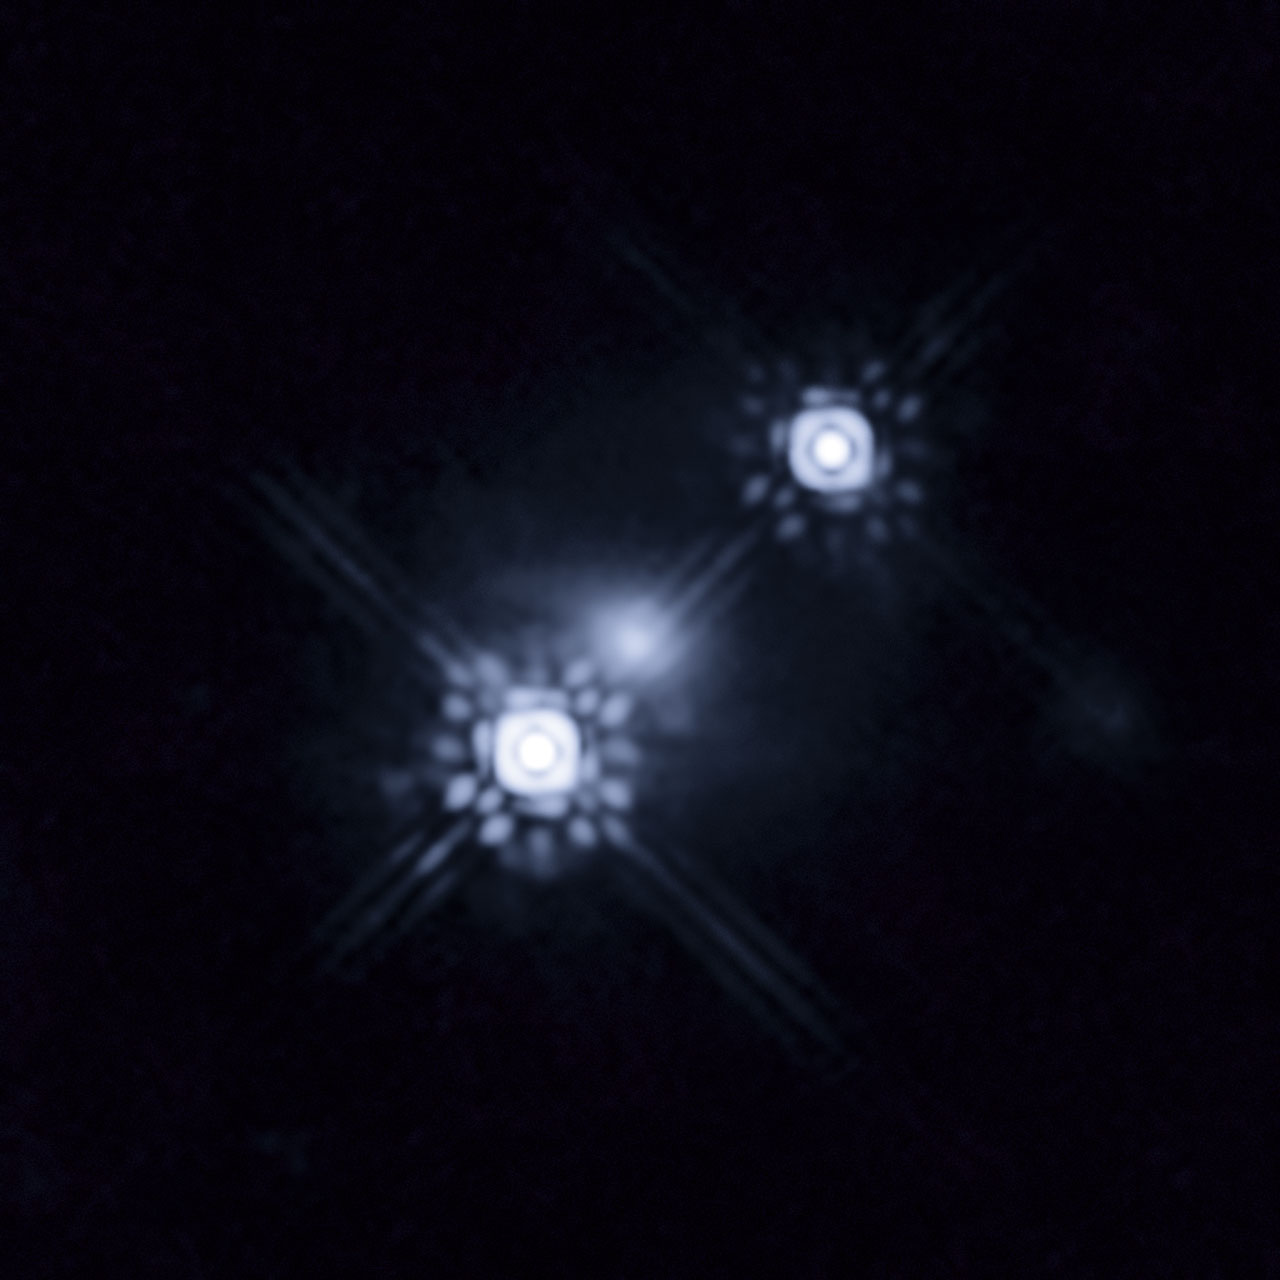 Gravitationally lensed quasar HE 1104-1805